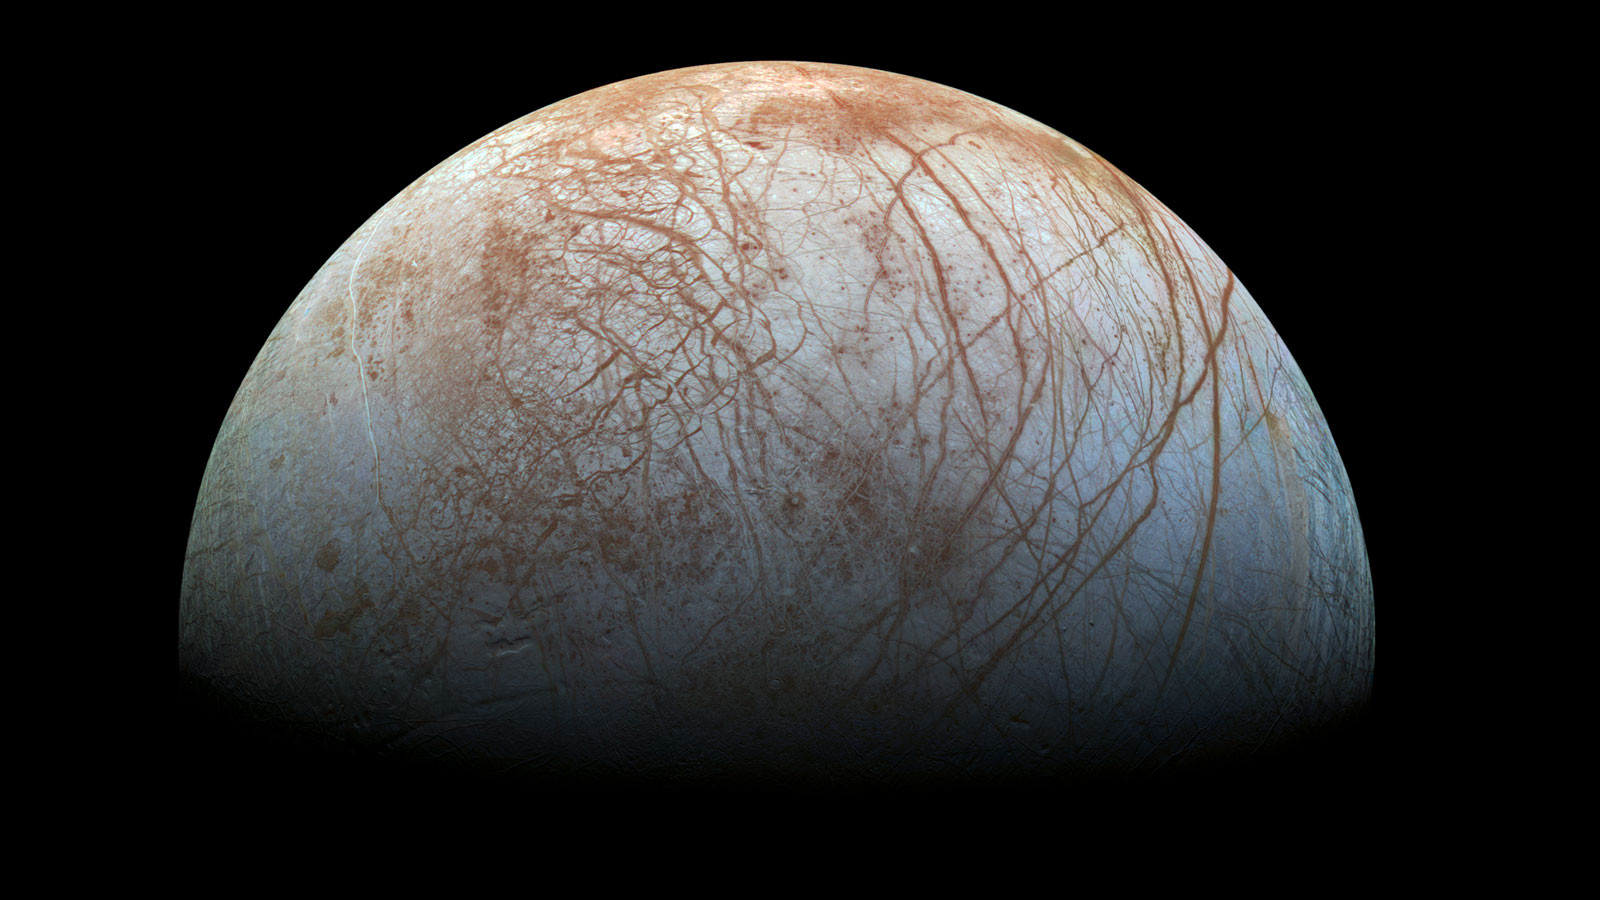 朱诺号观测木星有重大发现?官方破梗:非外星人! | ETtoday3C新闻 | ETtoday 新闻云